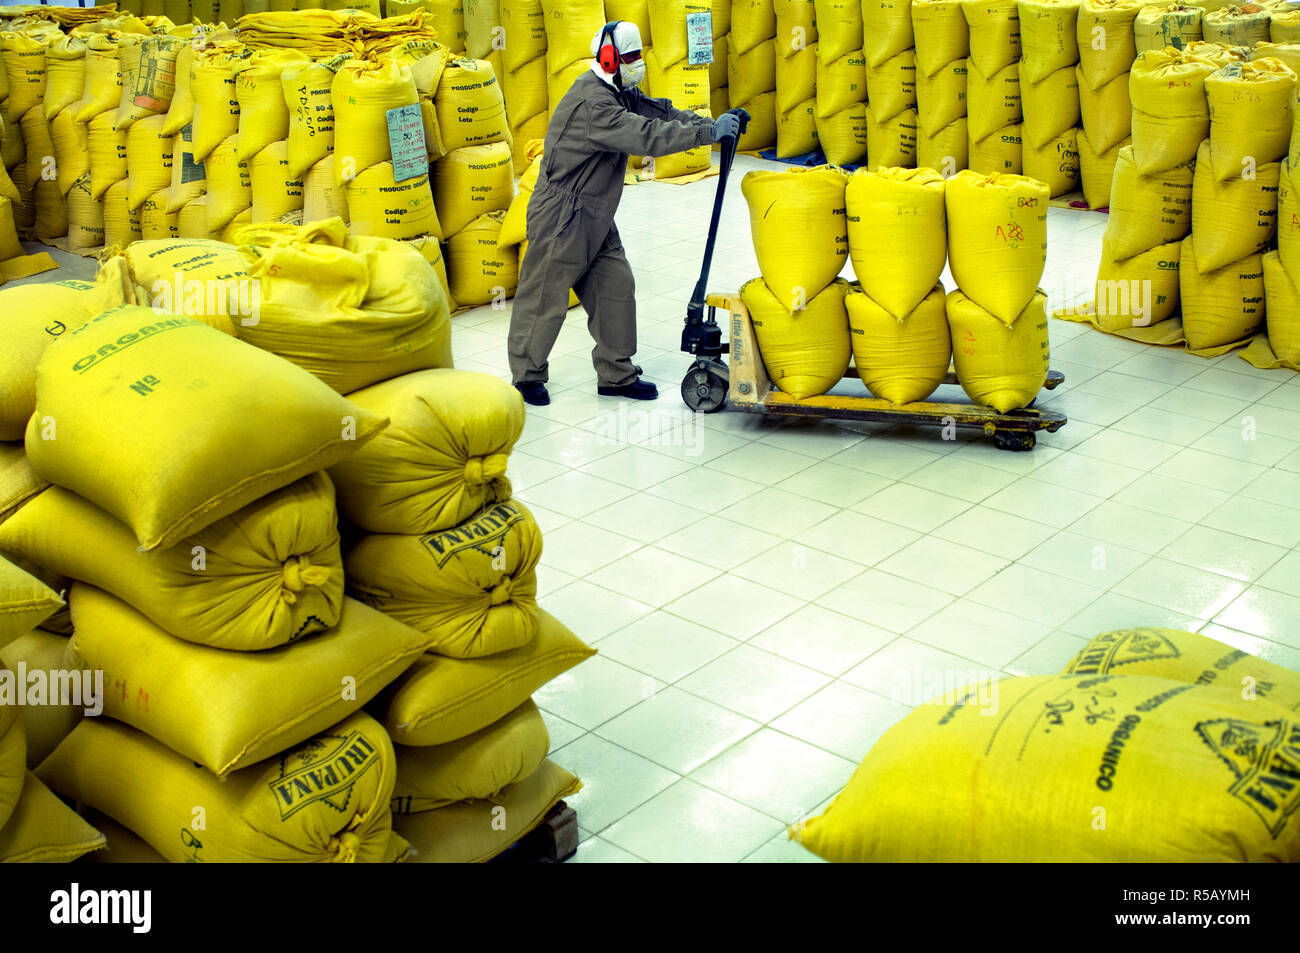 Usine de quinoa, sacs de quinoa pour l'exportation, El Alto, Bolivie Banque D'Images